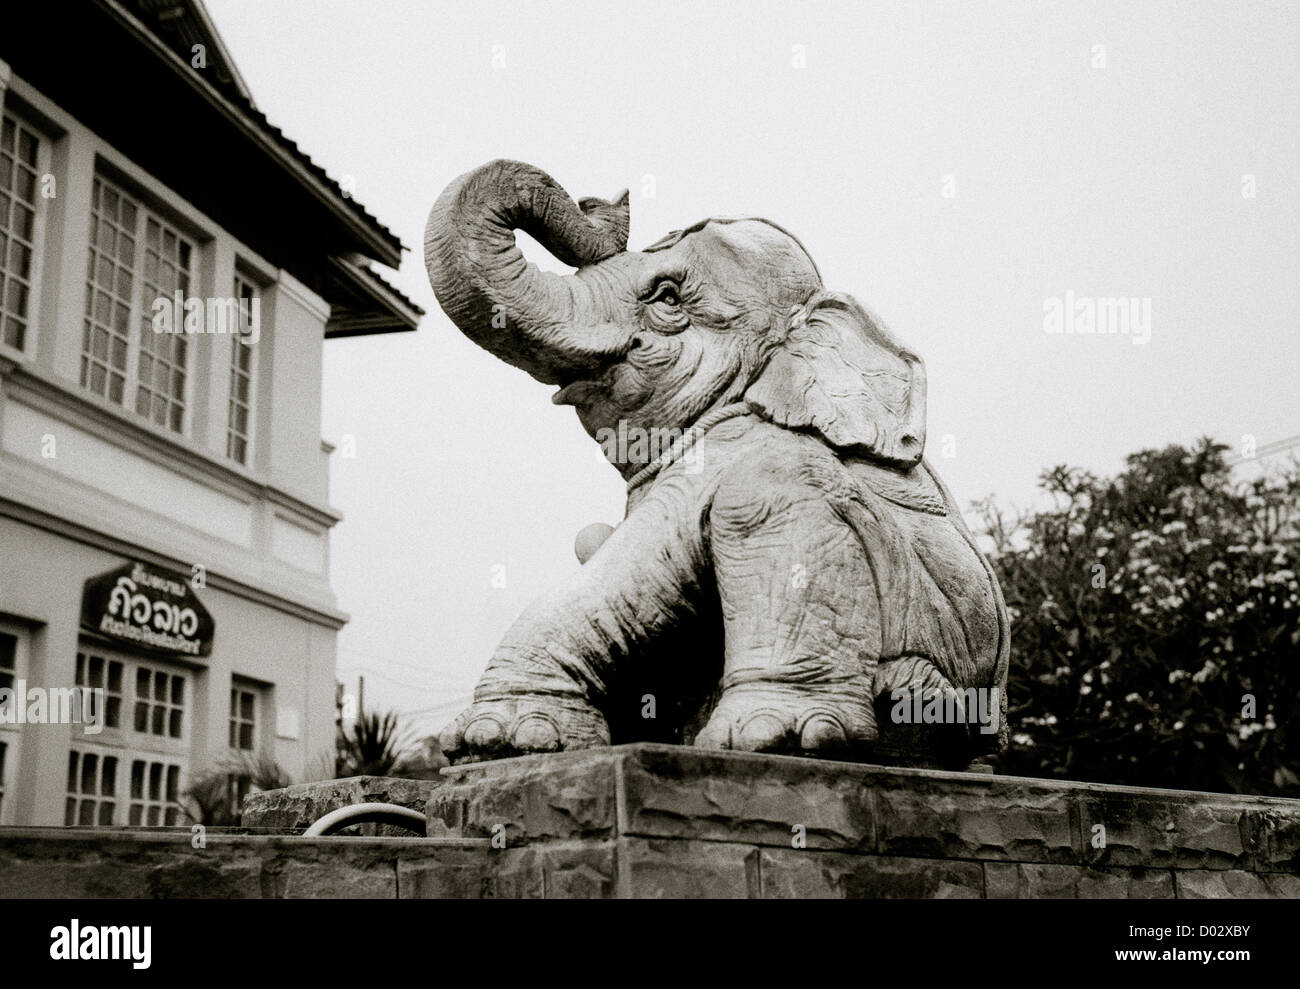 Éléphant statue sur une rue dans la région de Vientiane au Laos dans l'Indochine en Extrême-Orient Asie du sud-est. Billet d'animaux éléphants Banque D'Images